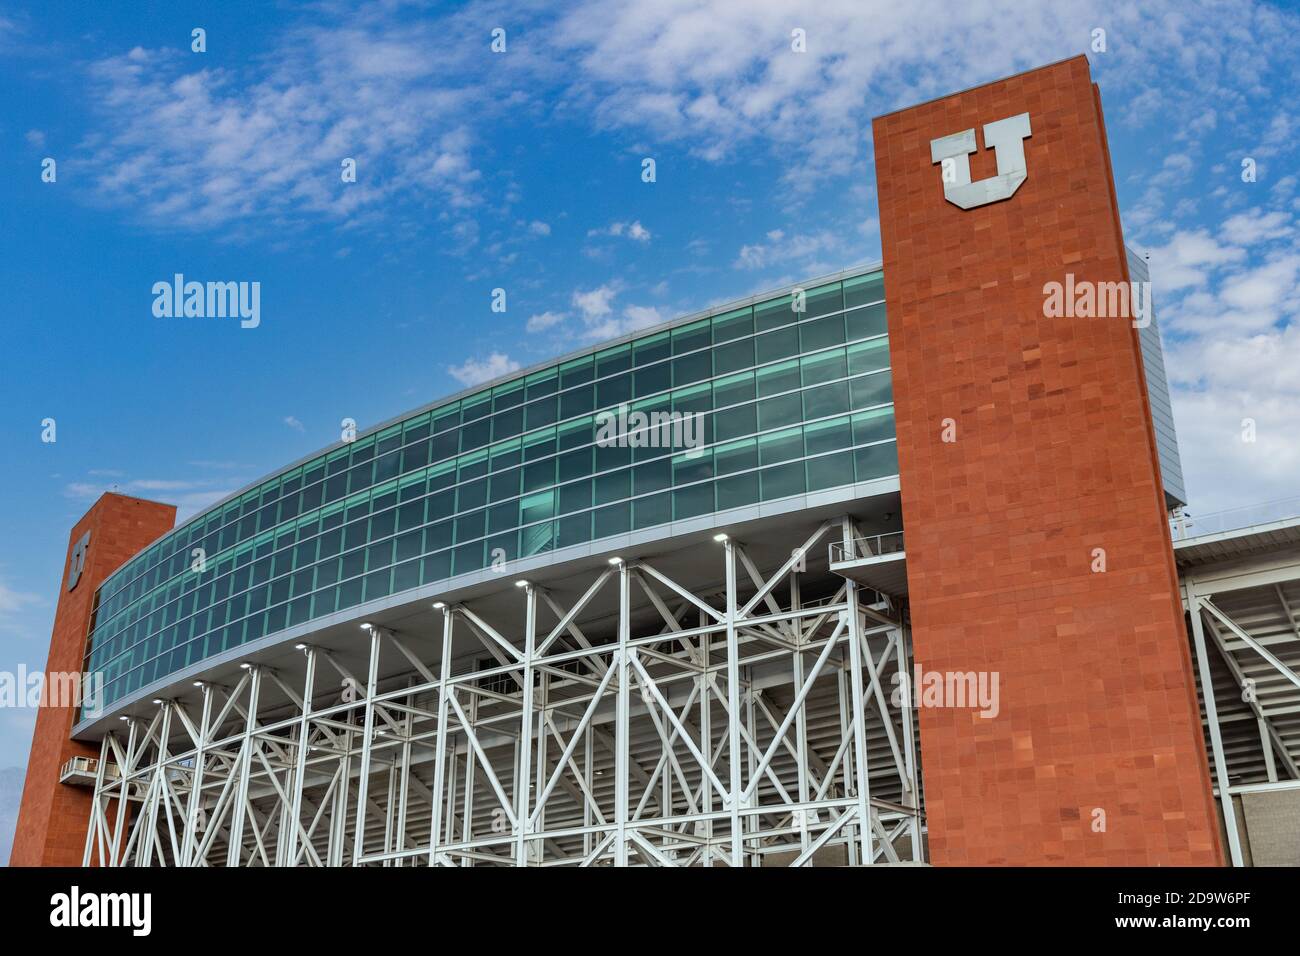 Salt Lake City, UT / USA - 6. November 2020: Rice-Eccles Stadium, Heimstadion der Utah Utes Fußballmannschaft, und die Olympischen Winterspiele 2002 Stockfoto